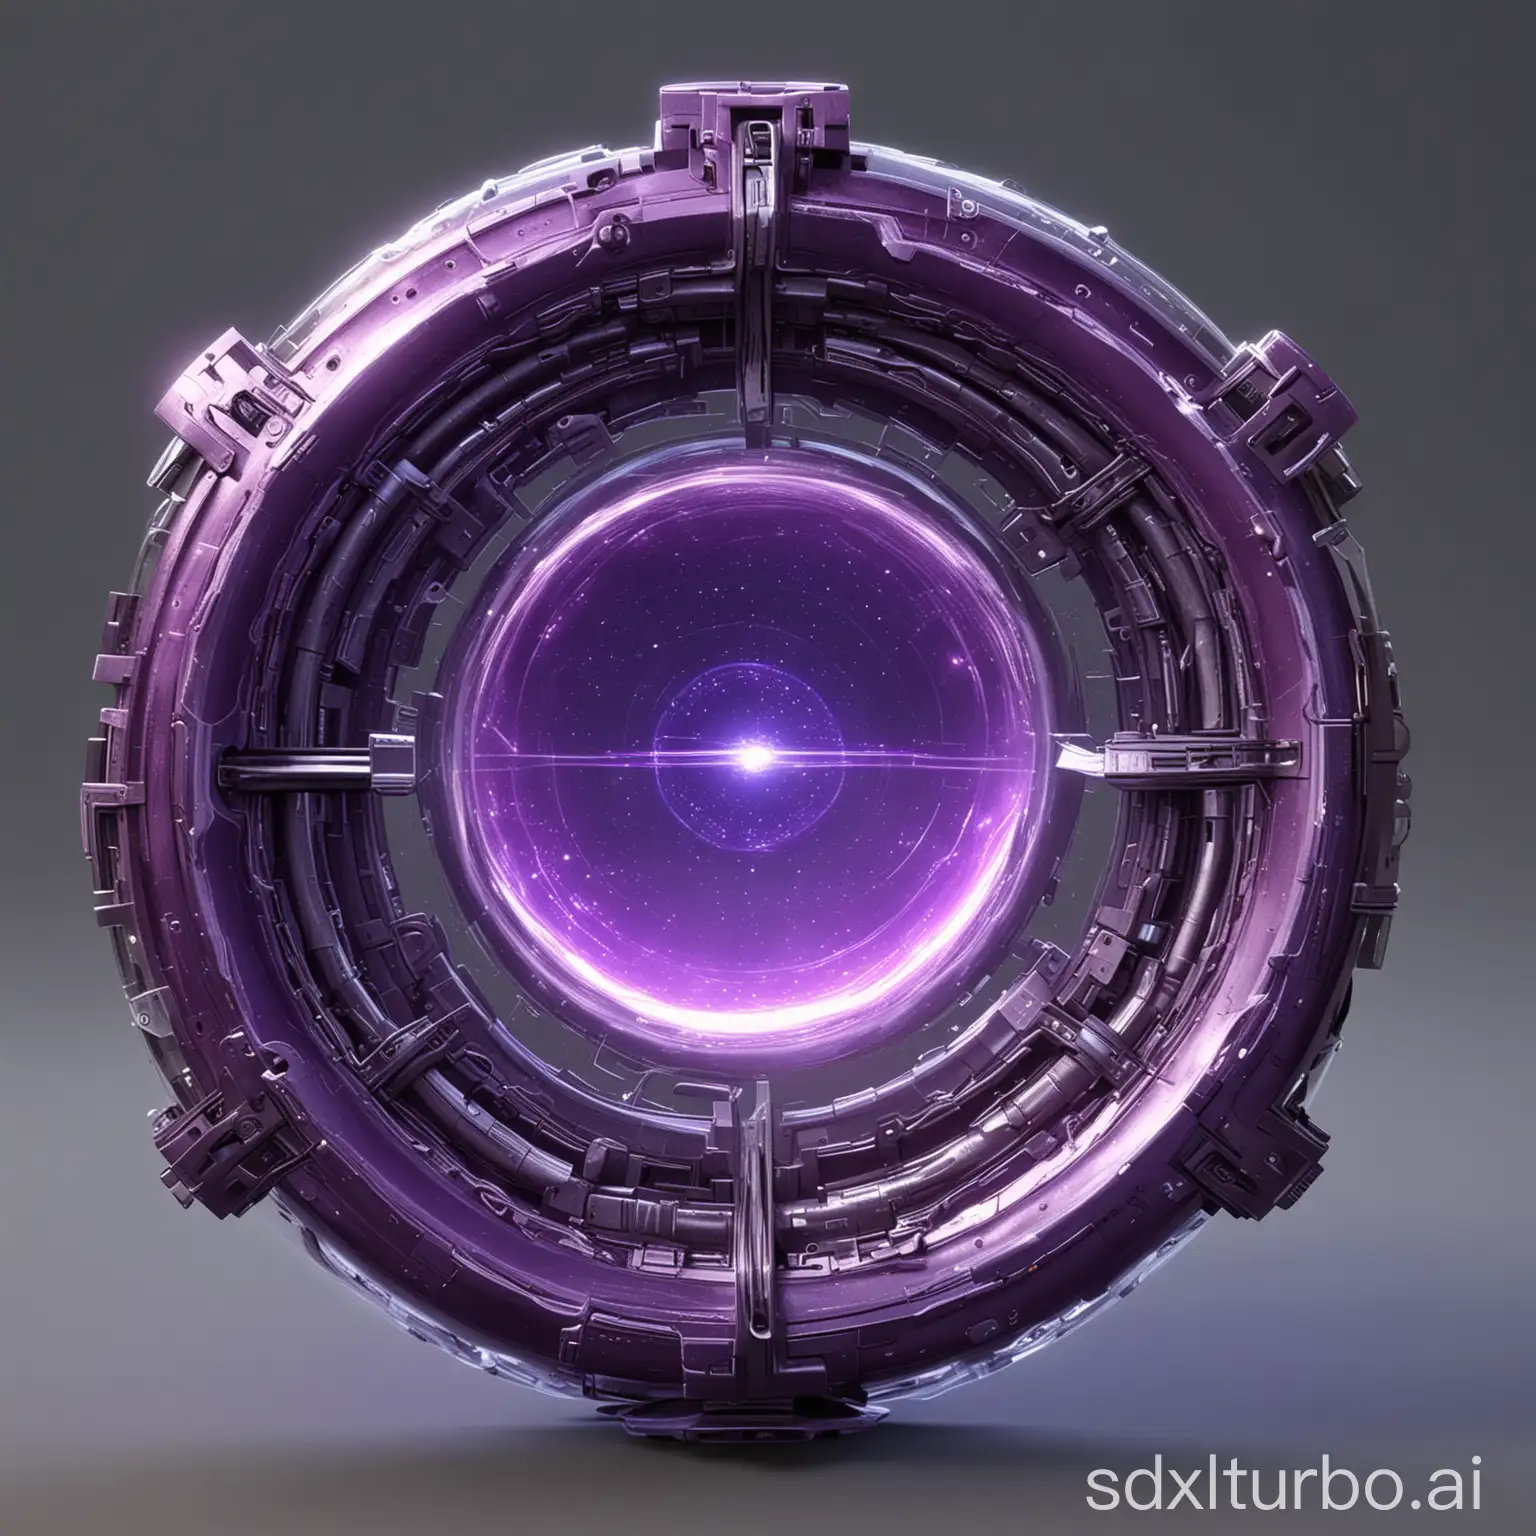 sci-fi dimension portal,material : glass,color of portal:purple